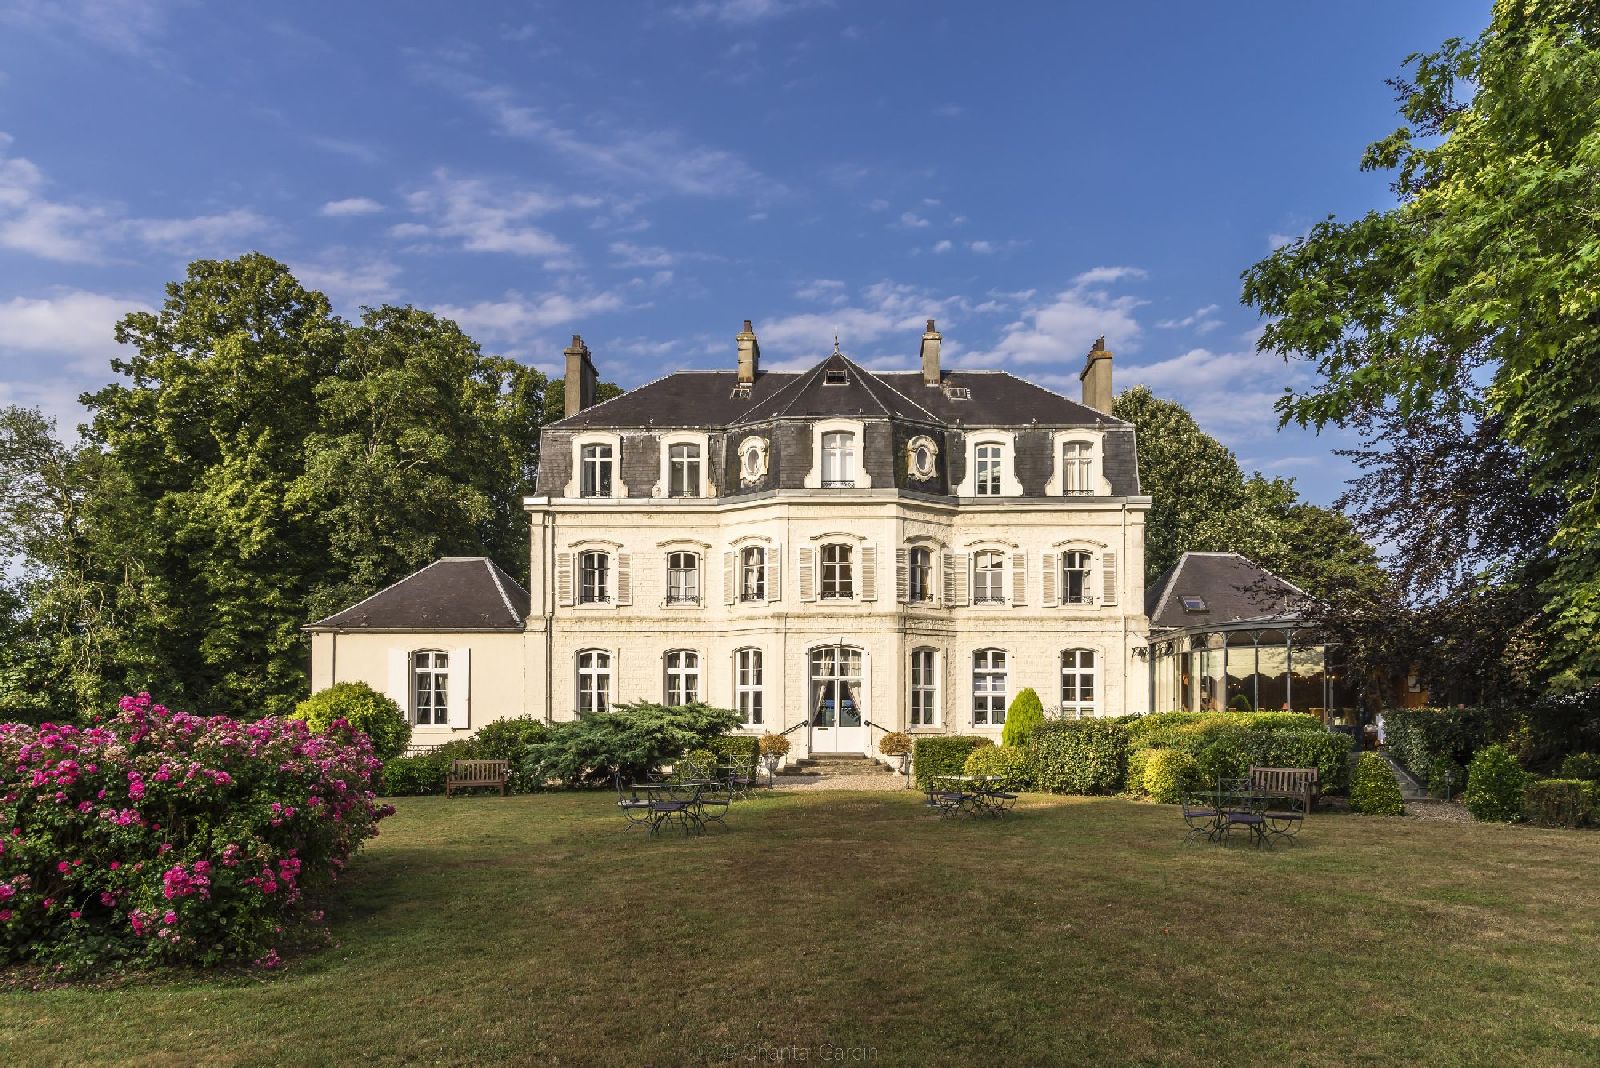 golf-expedition-golf-reizen-frankrijk-regio-pas-de-calais-hotel-cléry-entree-van-kasteel-met-tuin.jpg